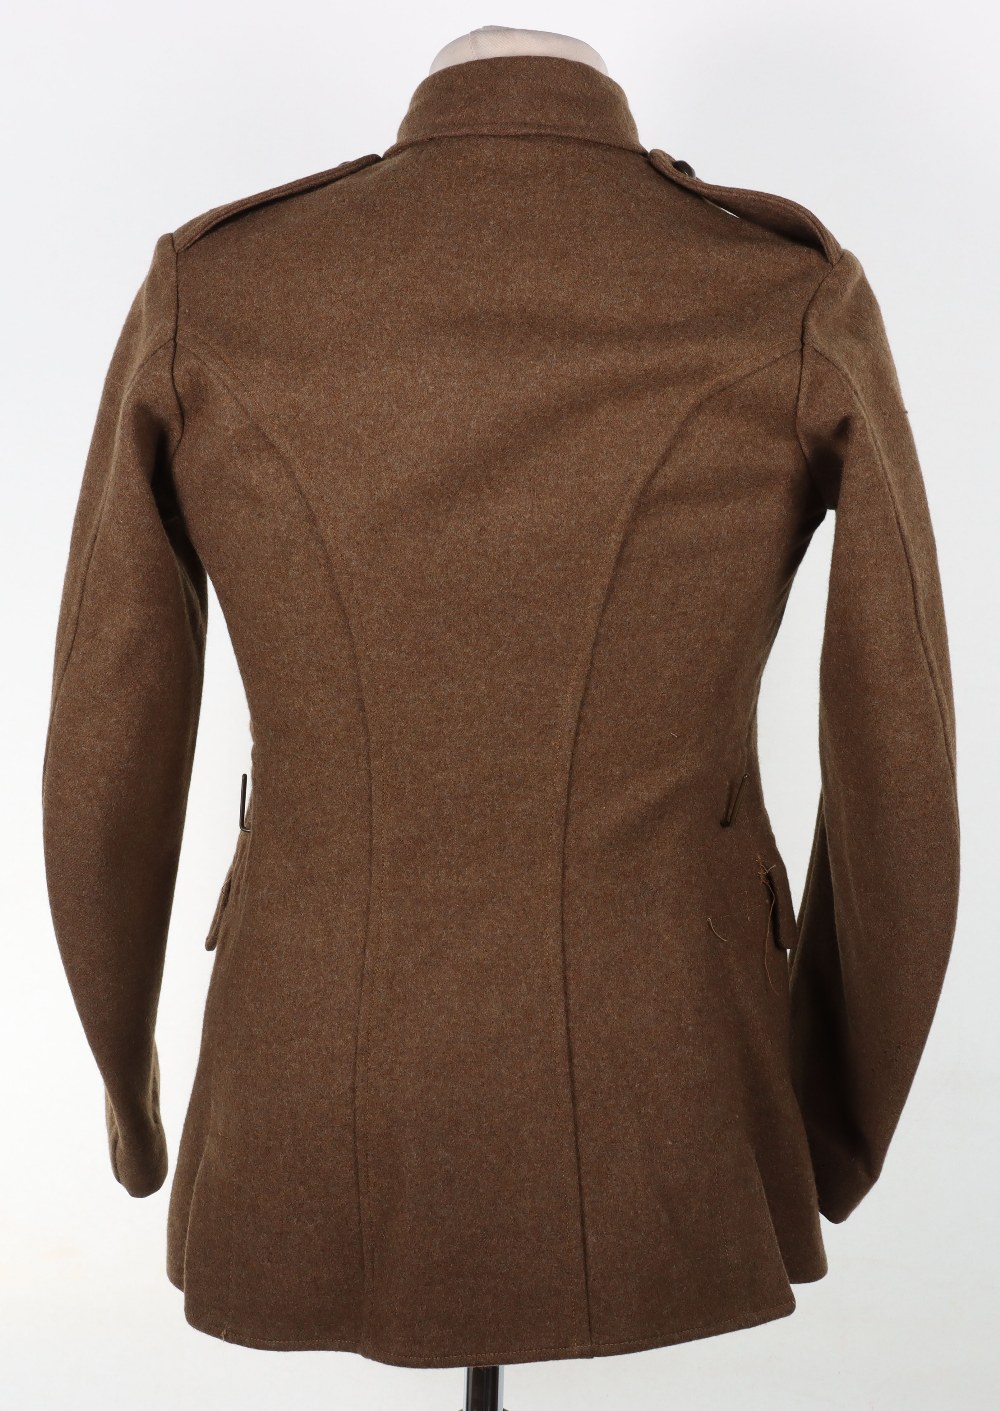 1922 Pattern Service Dress Tunic - Image 7 of 12